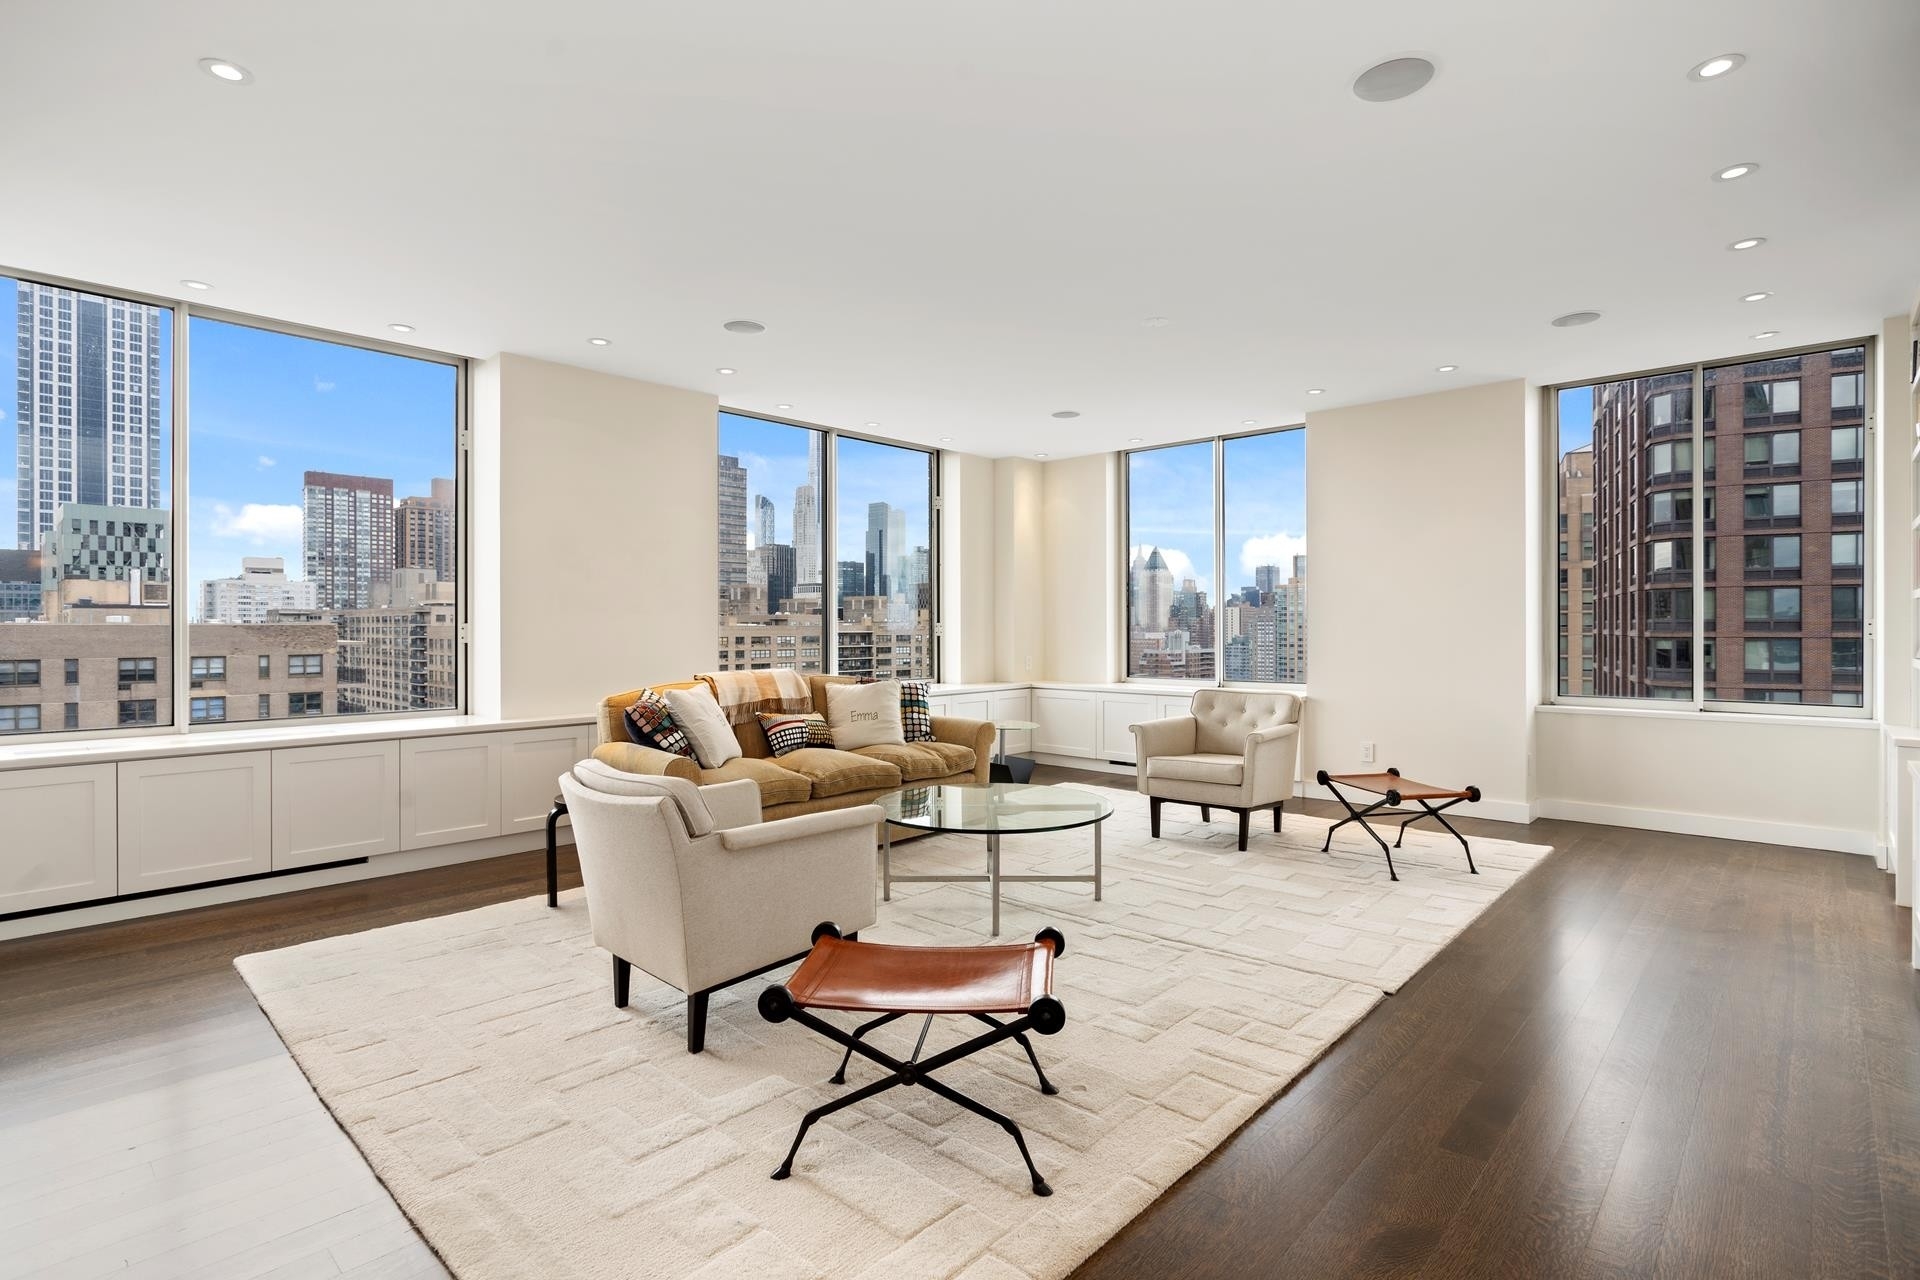 Condominium for Sale at 200 RIVERSIDE BLVD, 28DE Lincoln Square, New York, New York 10069